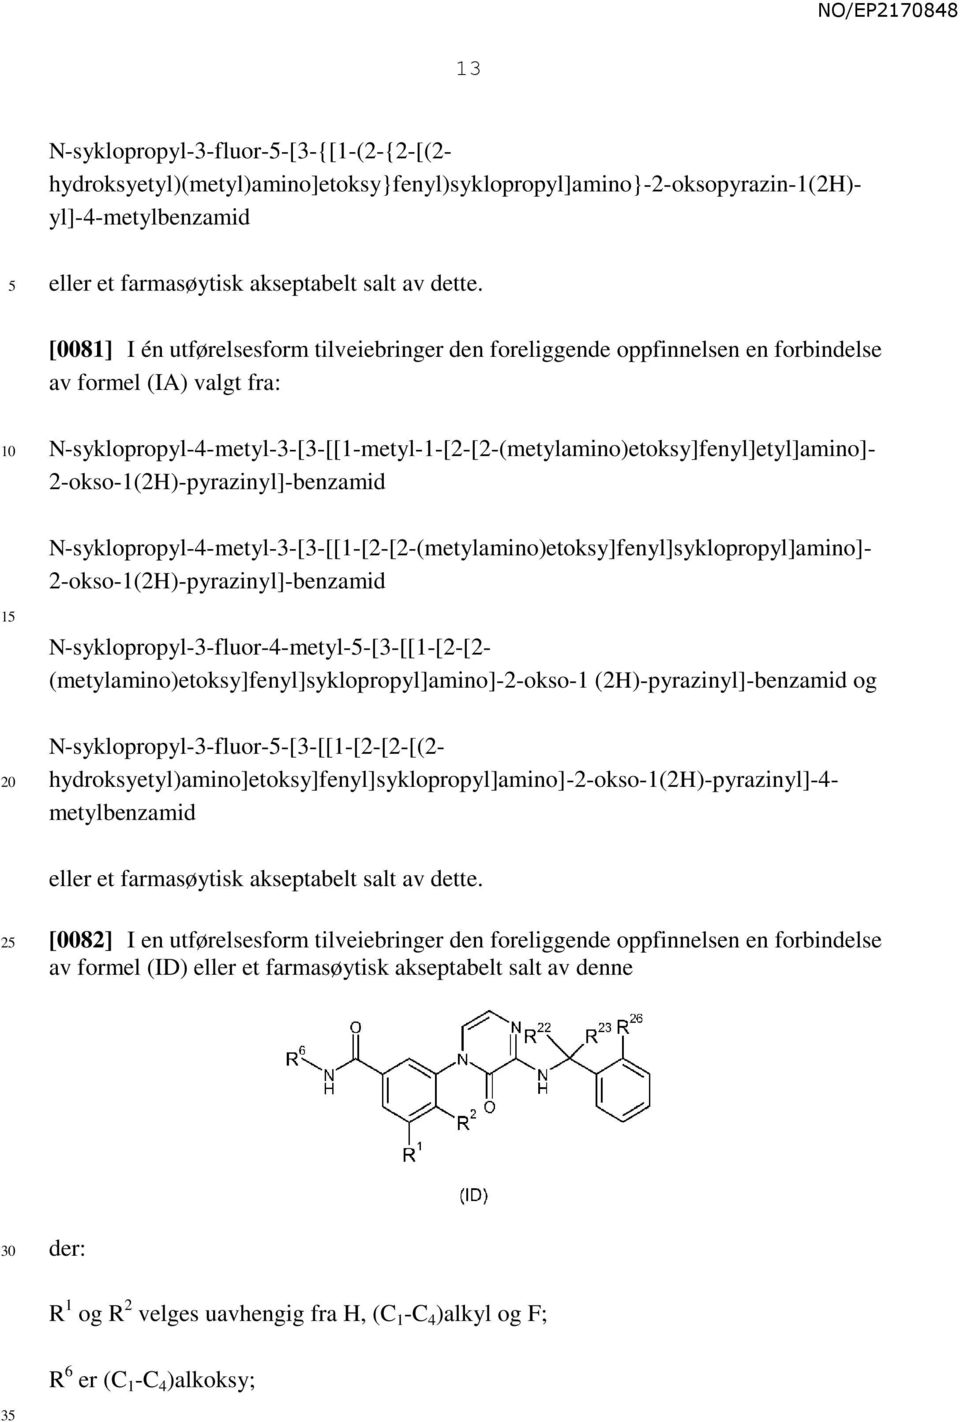 2-okso-1(2H)-pyrazinyl]-benzamid N-syklopropyl-4-metyl-3-[3-[[1-[2-[2-(metylamino)etoksy]fenyl]syklopropyl]amino]- 2-okso-1(2H)-pyrazinyl]-benzamid 1 N-syklopropyl-3-fluor-4-metyl--[3-[[1-[2-[2-